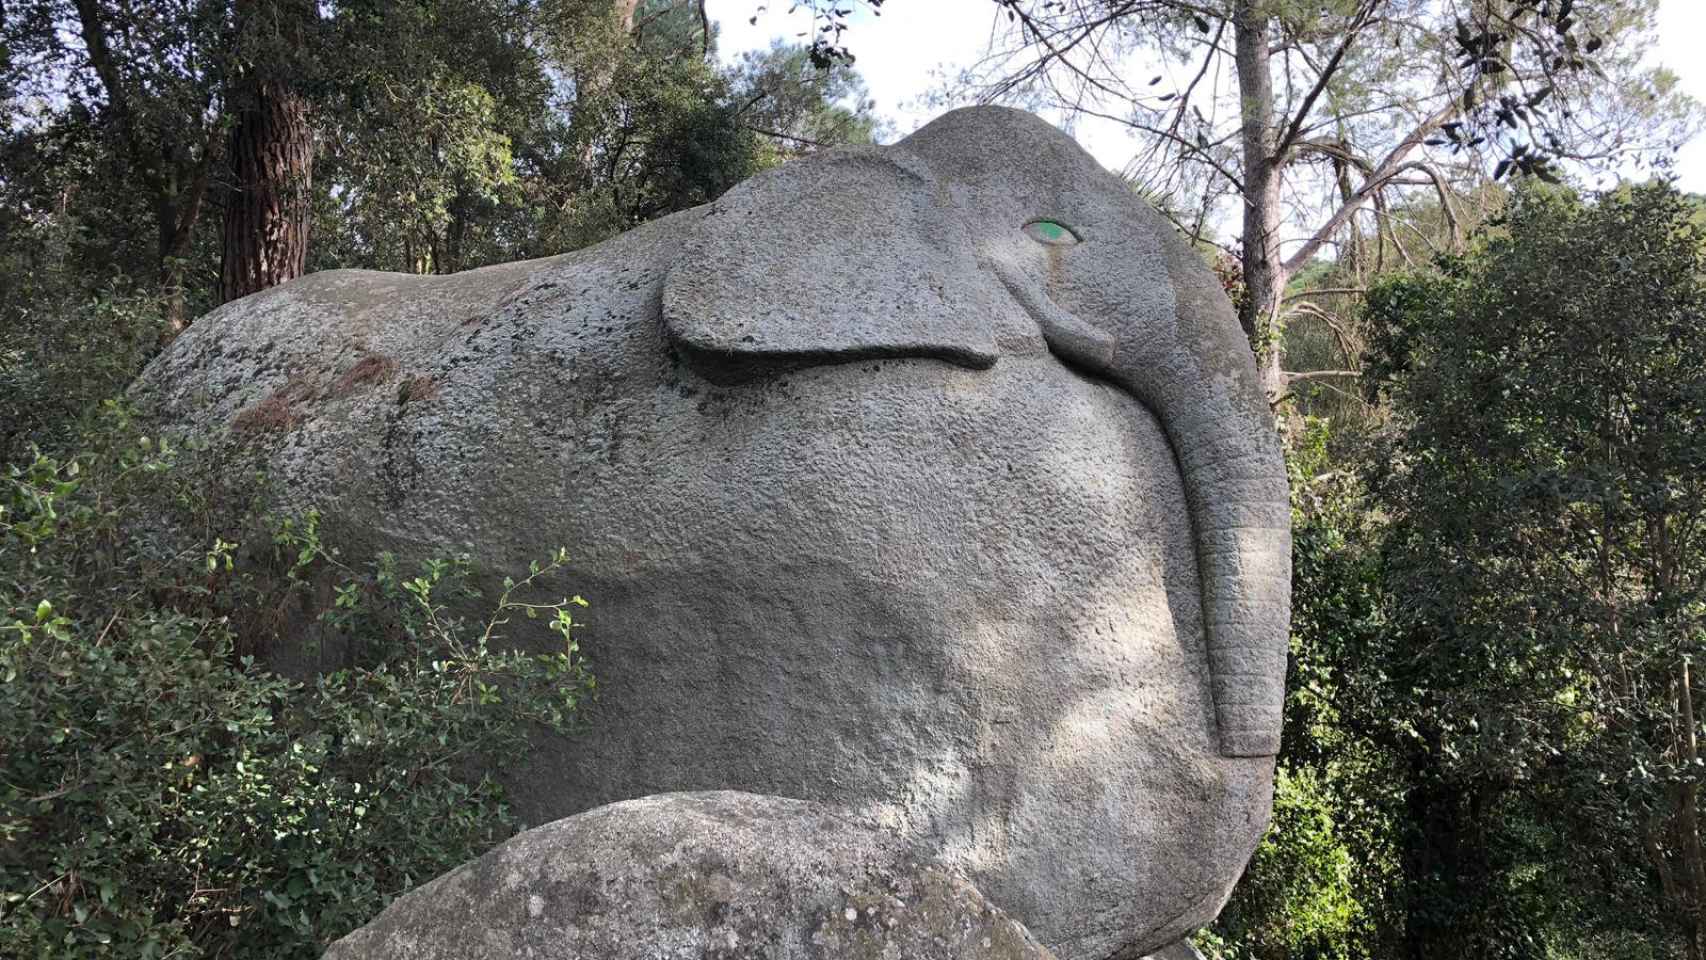 Escultura del elefante en el boque de Òrrius